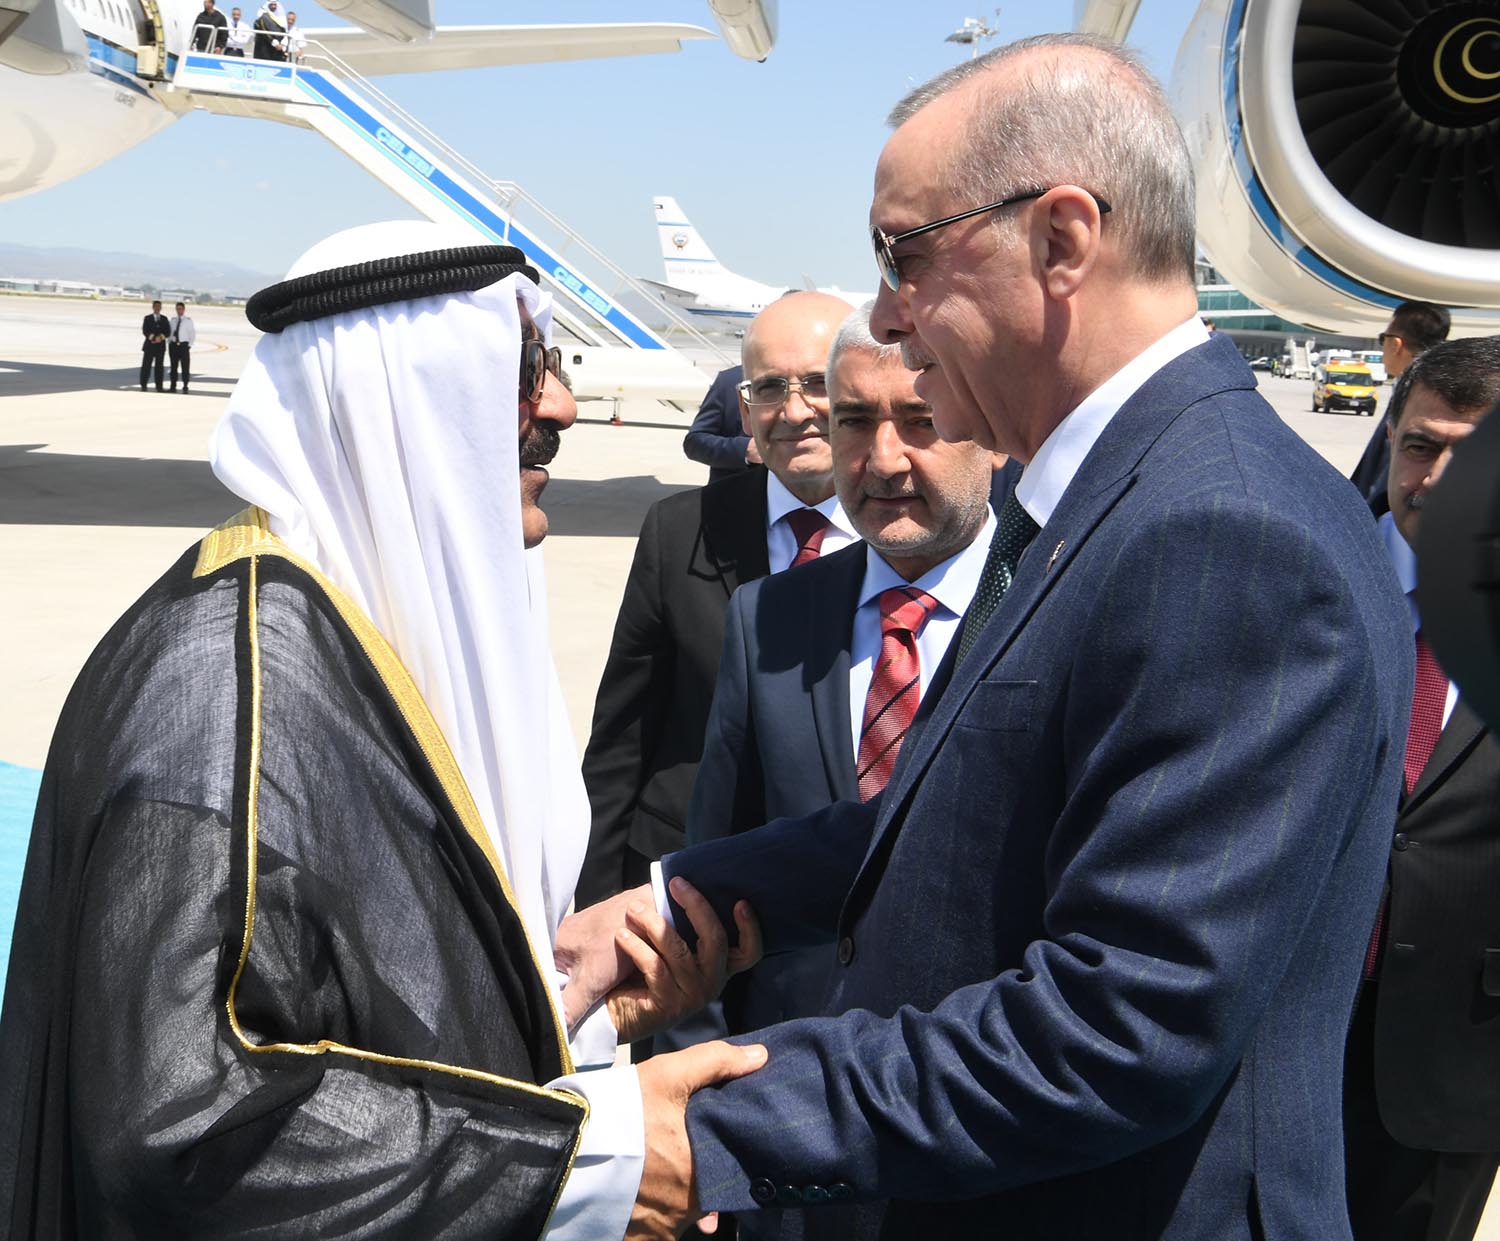 سمو أمير البلاد يصل إلى أنقرة في زيارة دولة إلى جمهورية تركيا الصديقة